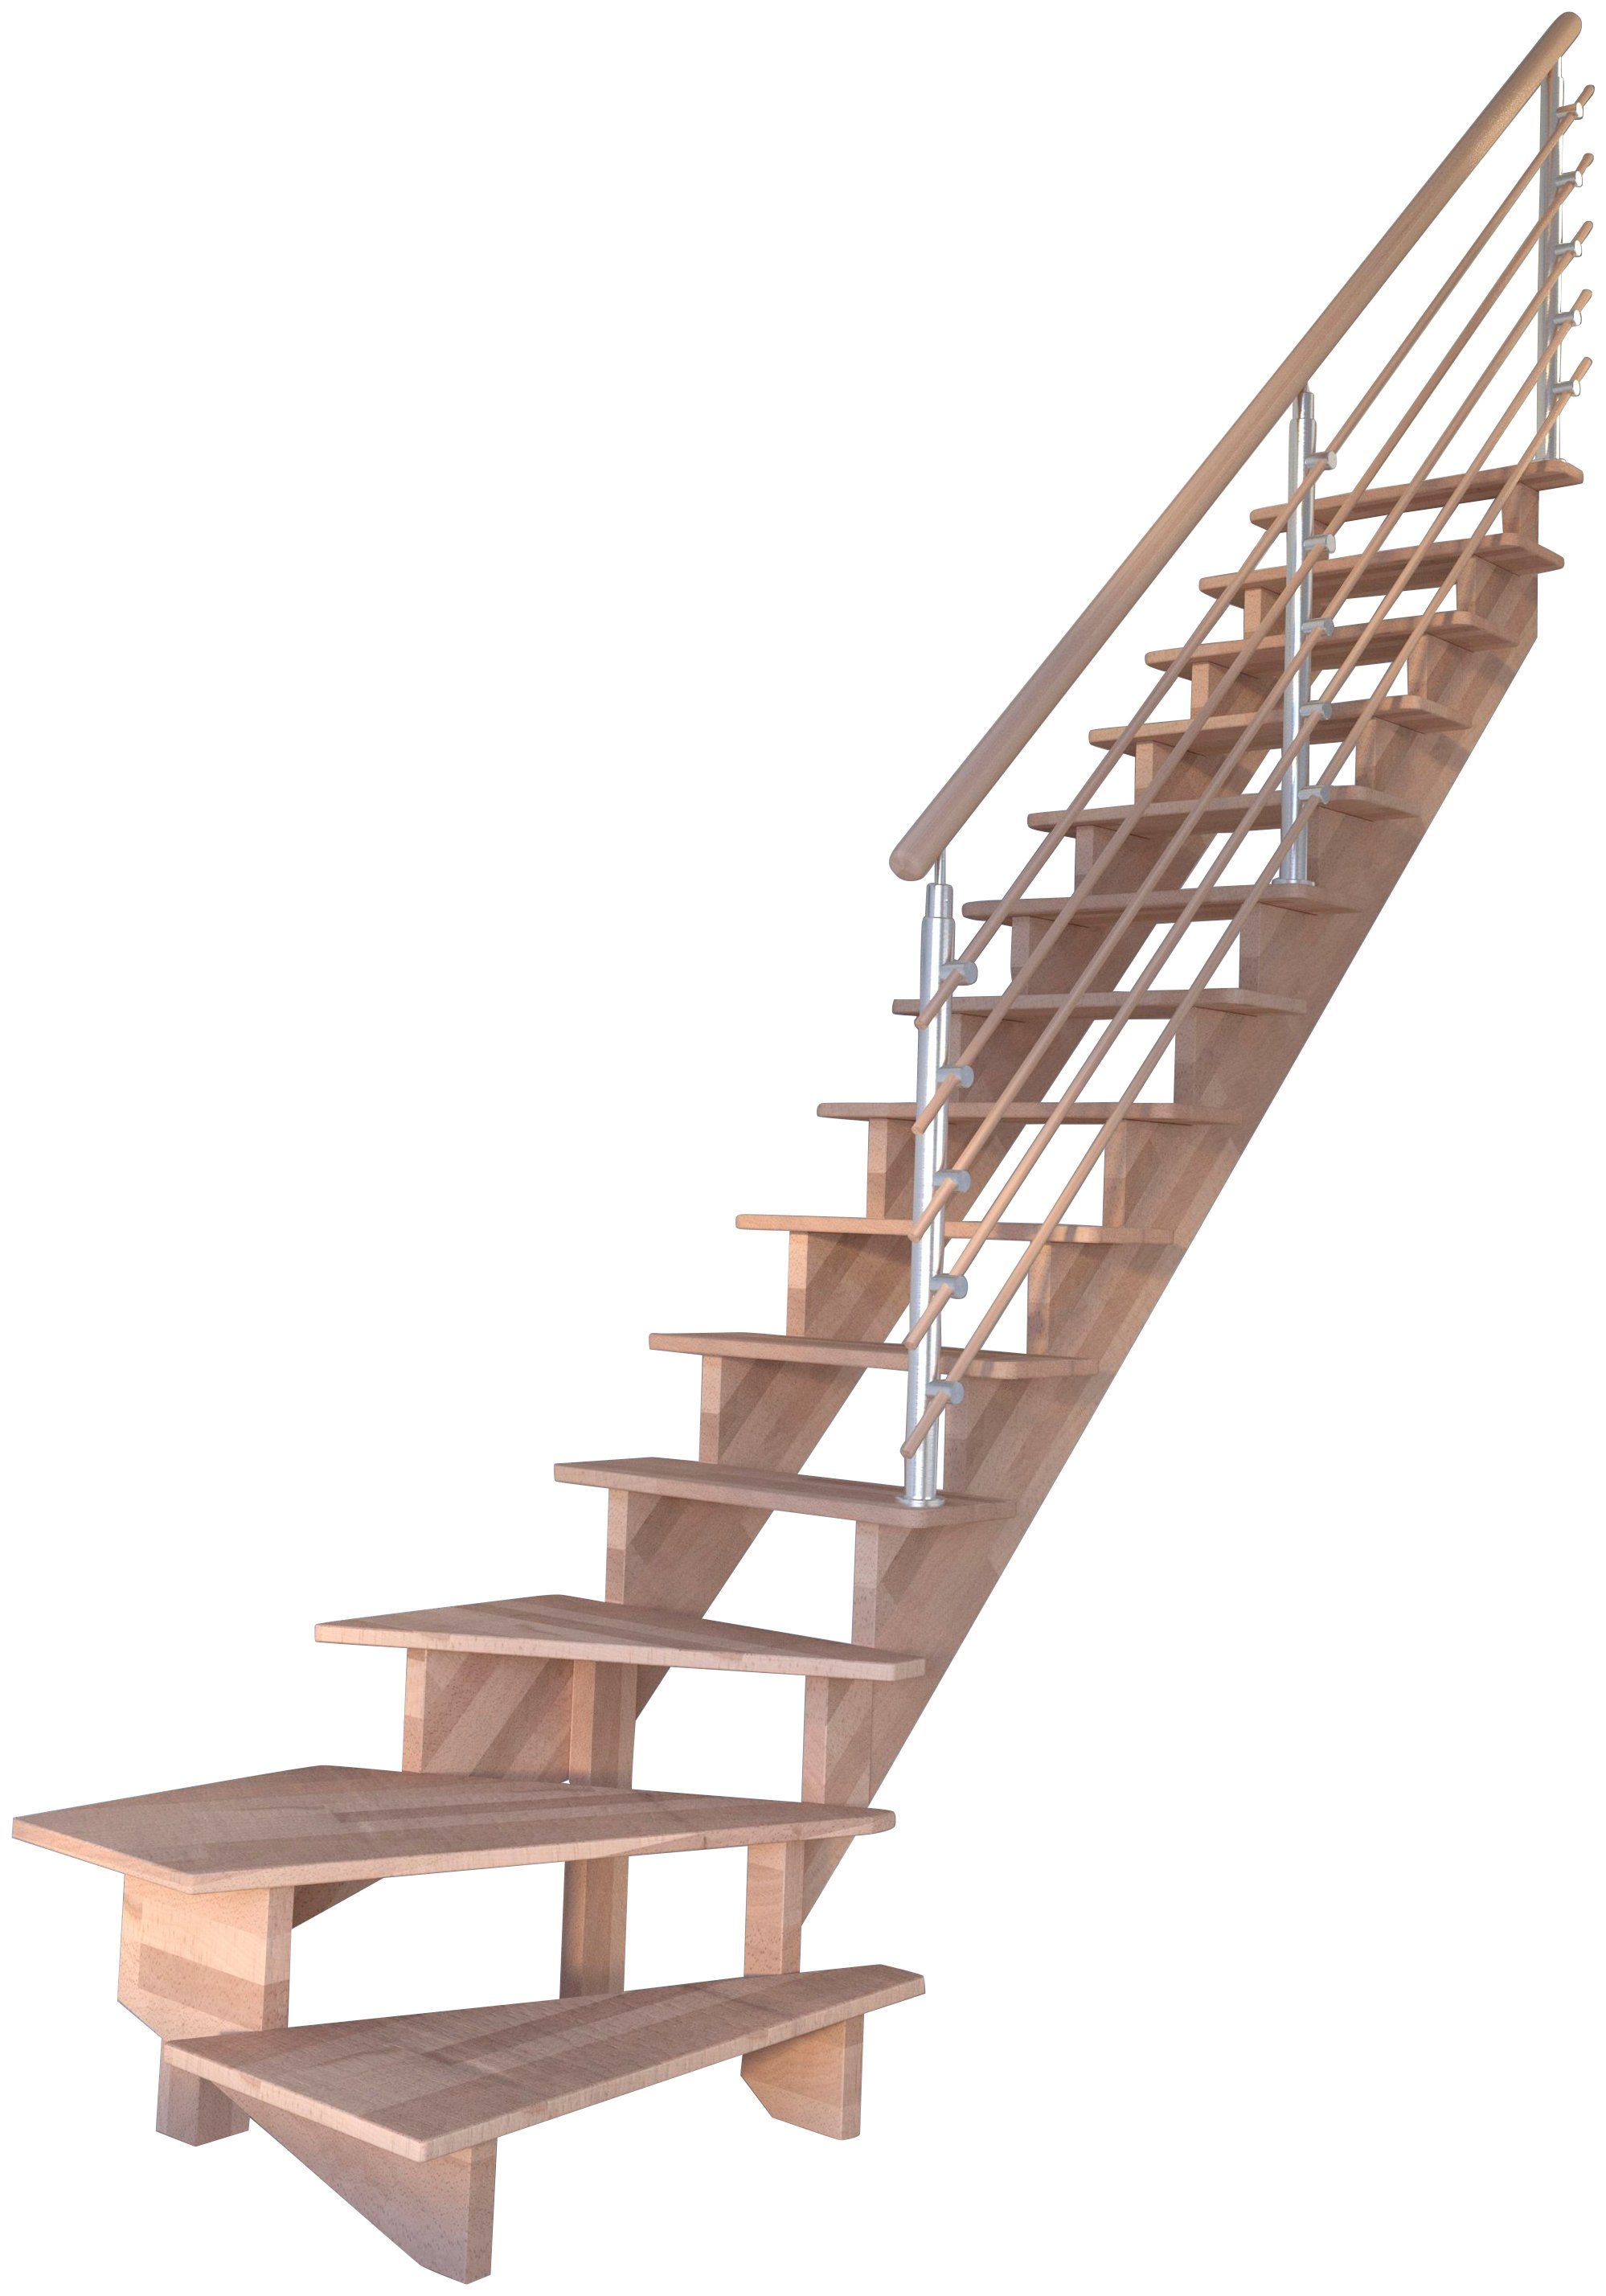 Durchgehende Holzrundstäbe, für Systemtreppe offen, Design-Geländer Wangenteile Massivholz gewendelt bis Stufen Geschosshöhen Starwood Rechts, Lindos, 300 cm,